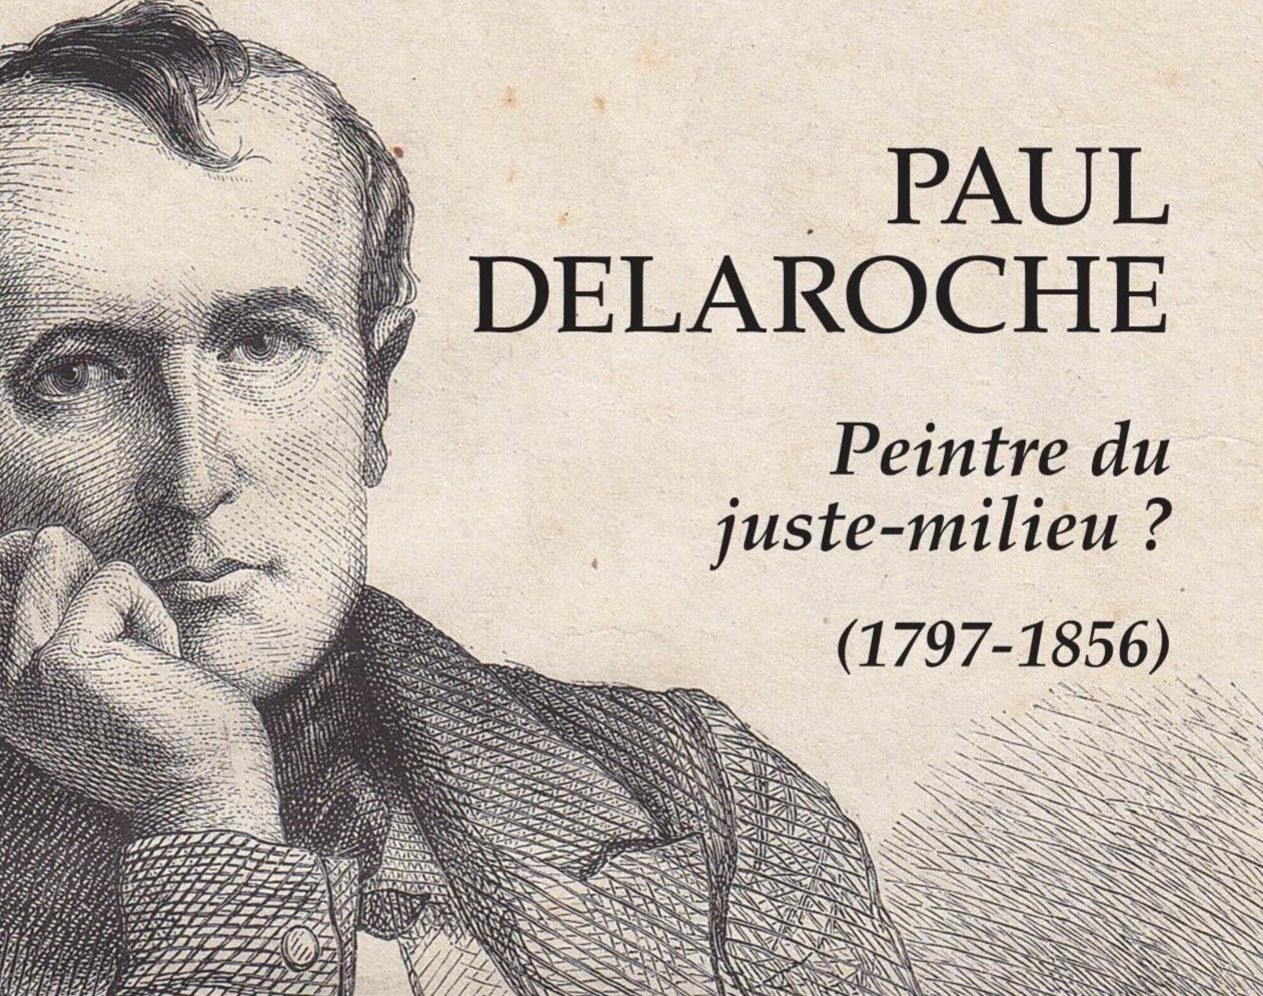 Paul Delaroche